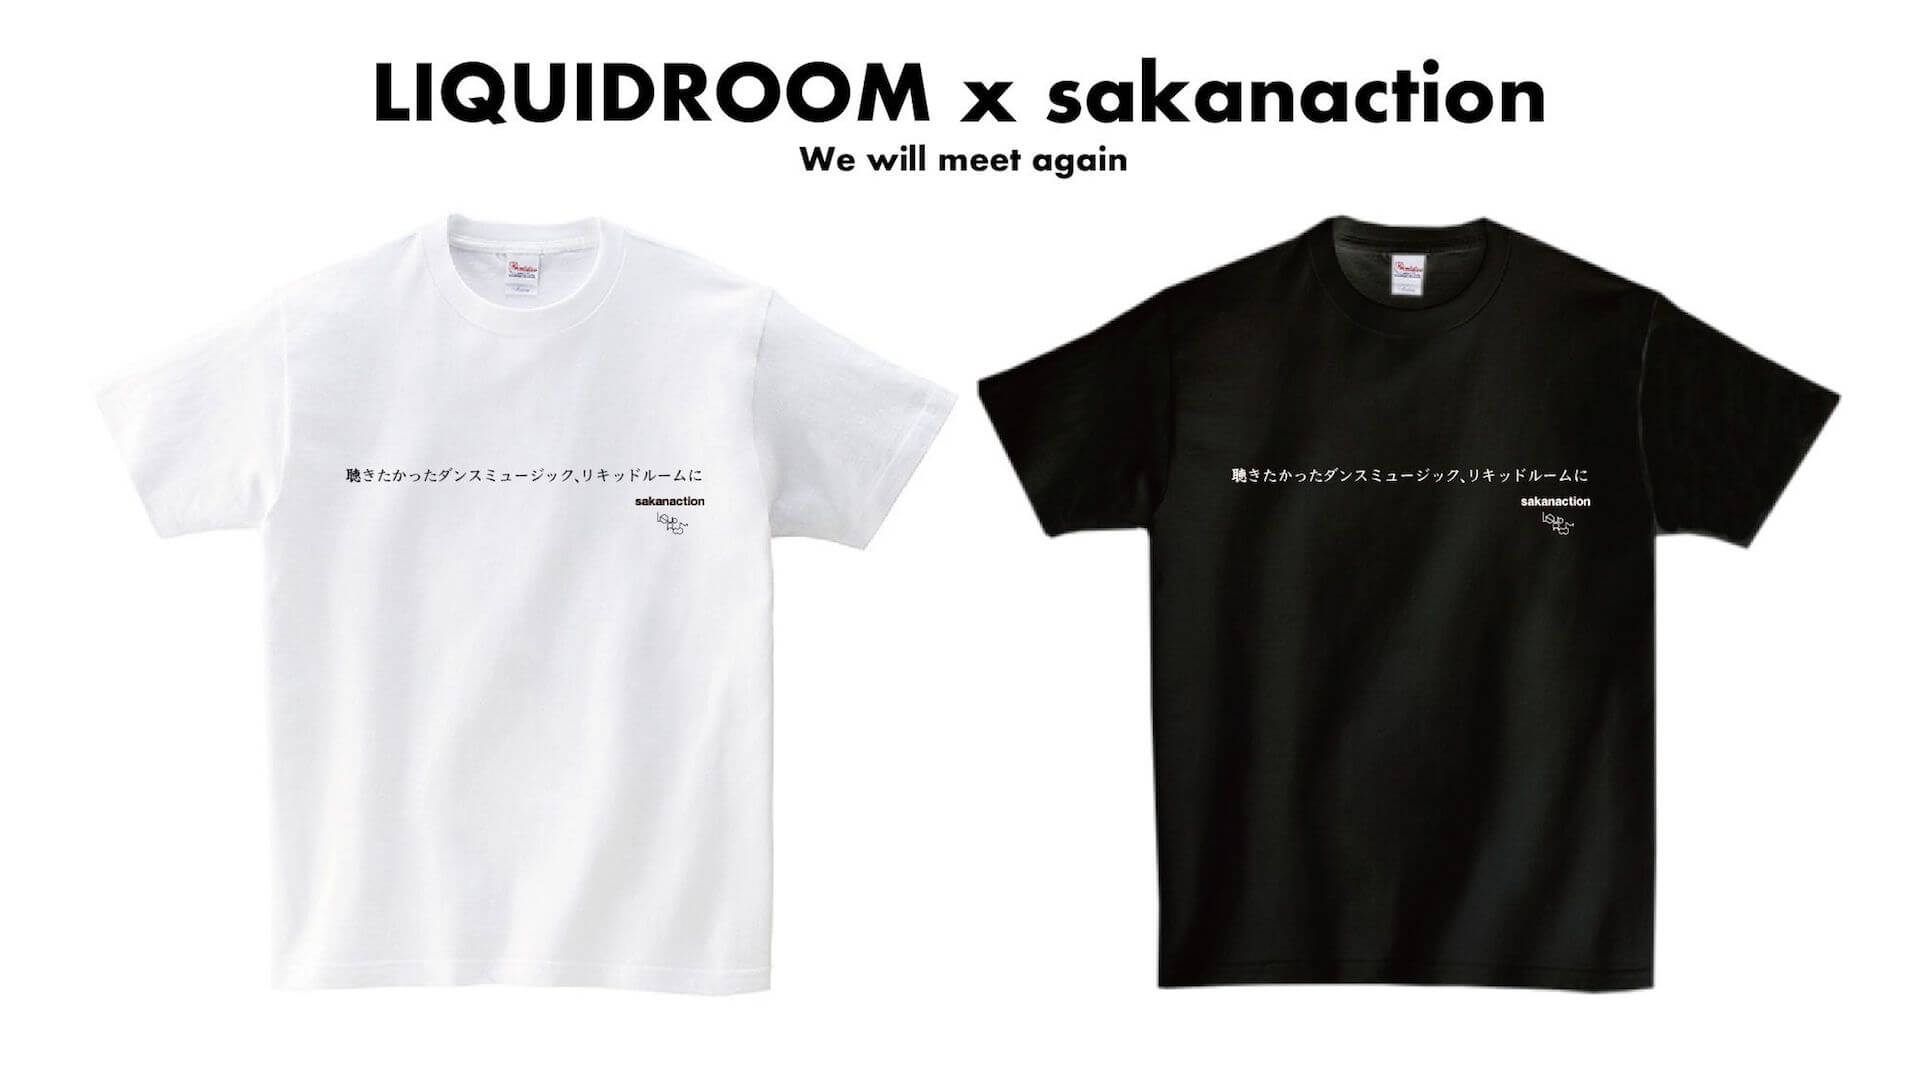 サカナクション × LIQUIDROOMのメッセージ・コラボ・Tシャツ、もちろんあの曲がテーマに music200513-liquidroom-sakanaction-1